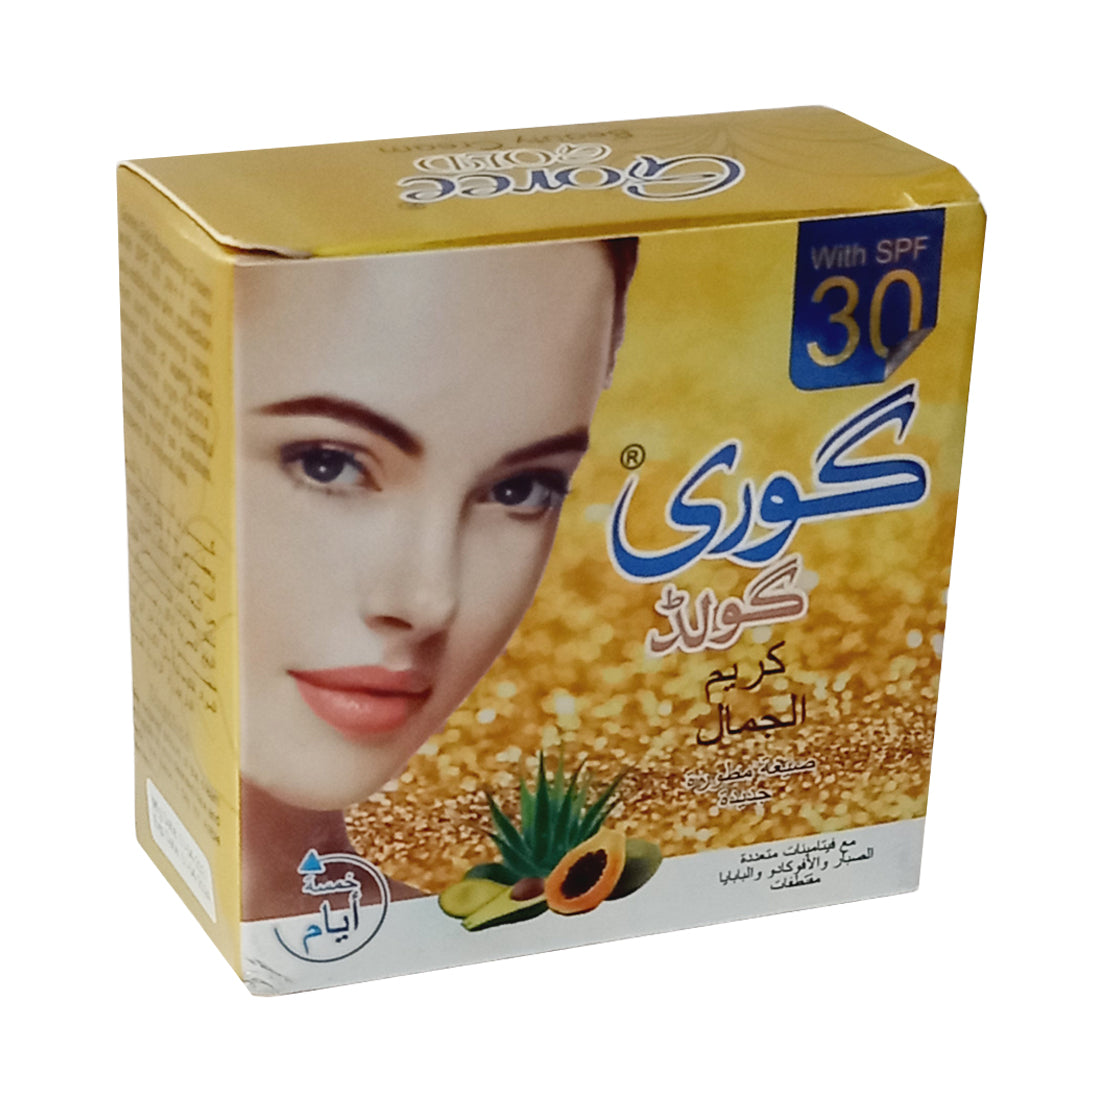 Goree Gold Beauty Fairness Cream 30gm